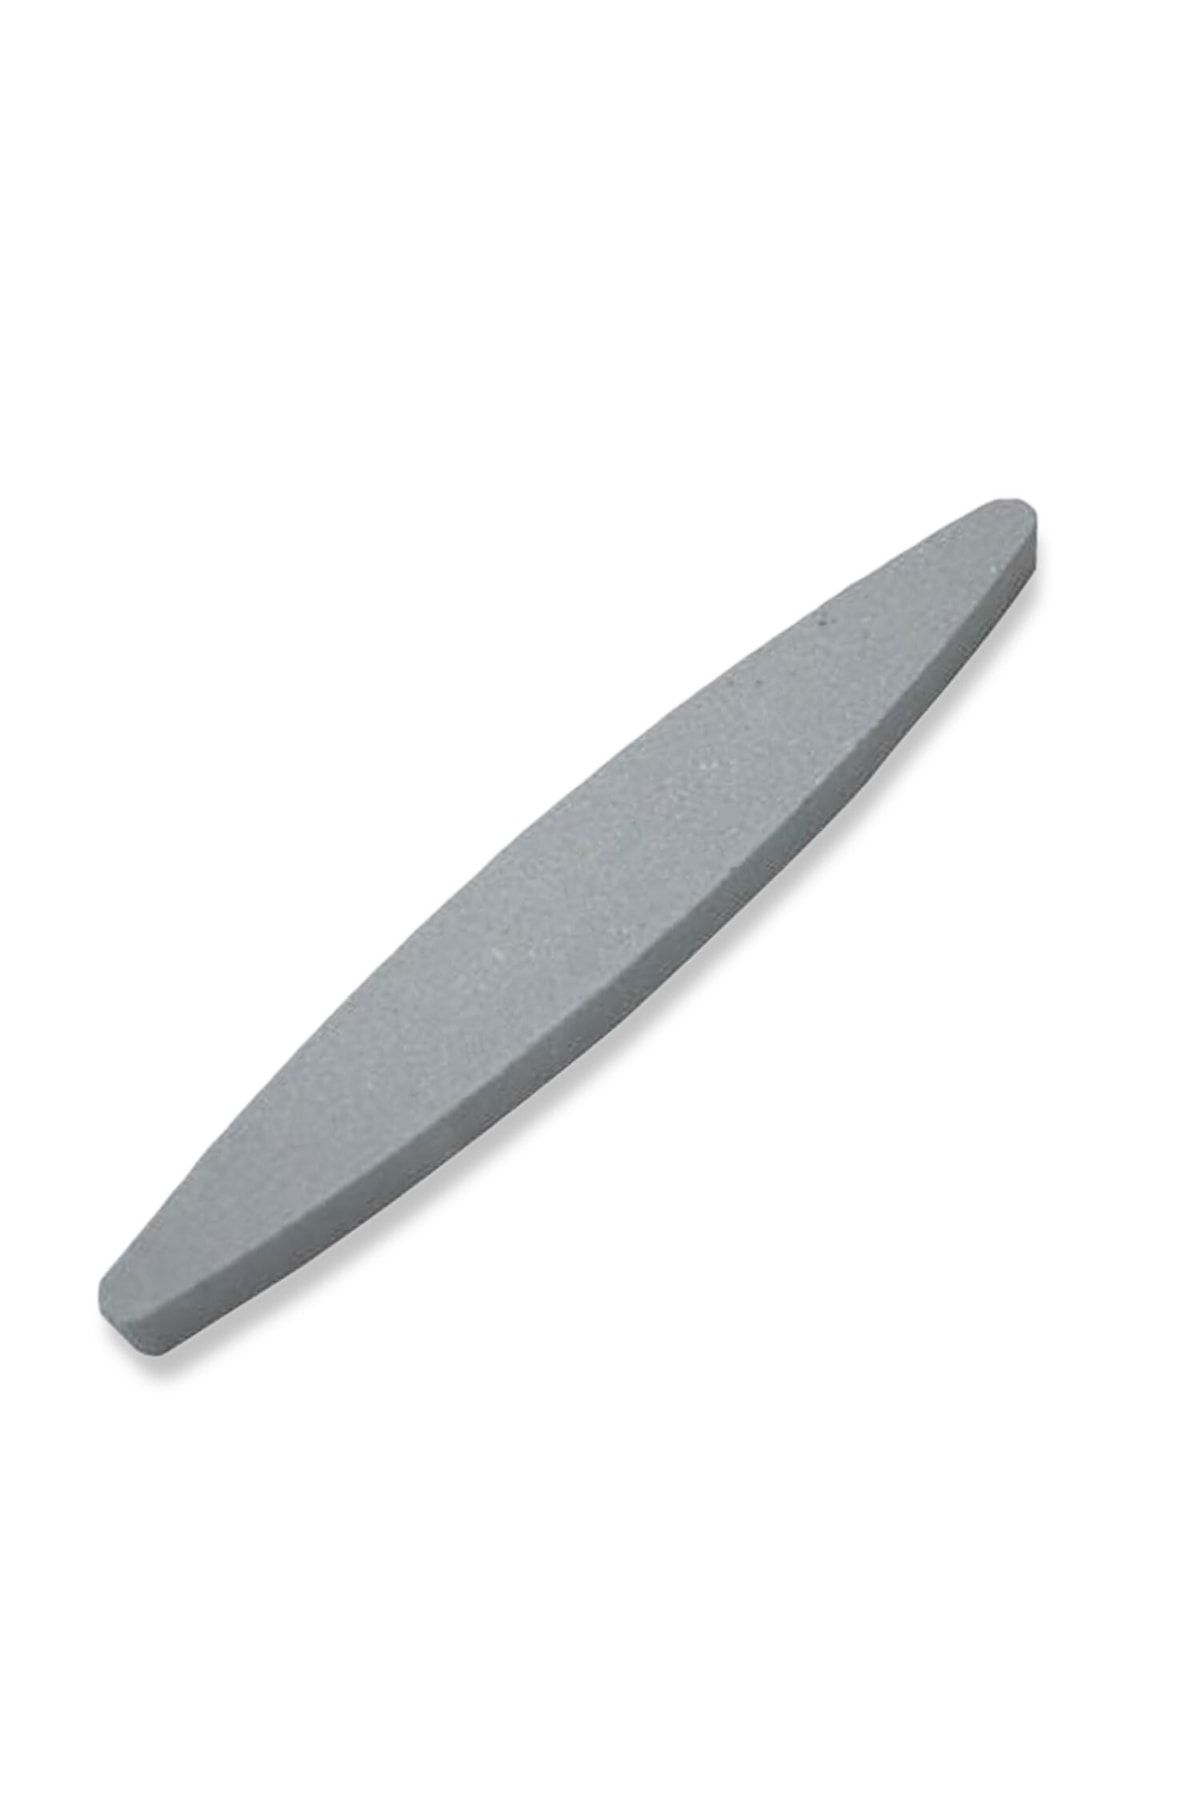 Black Stone Mutfak Bıçağı Keser Balta Bileme Taşı 22cm